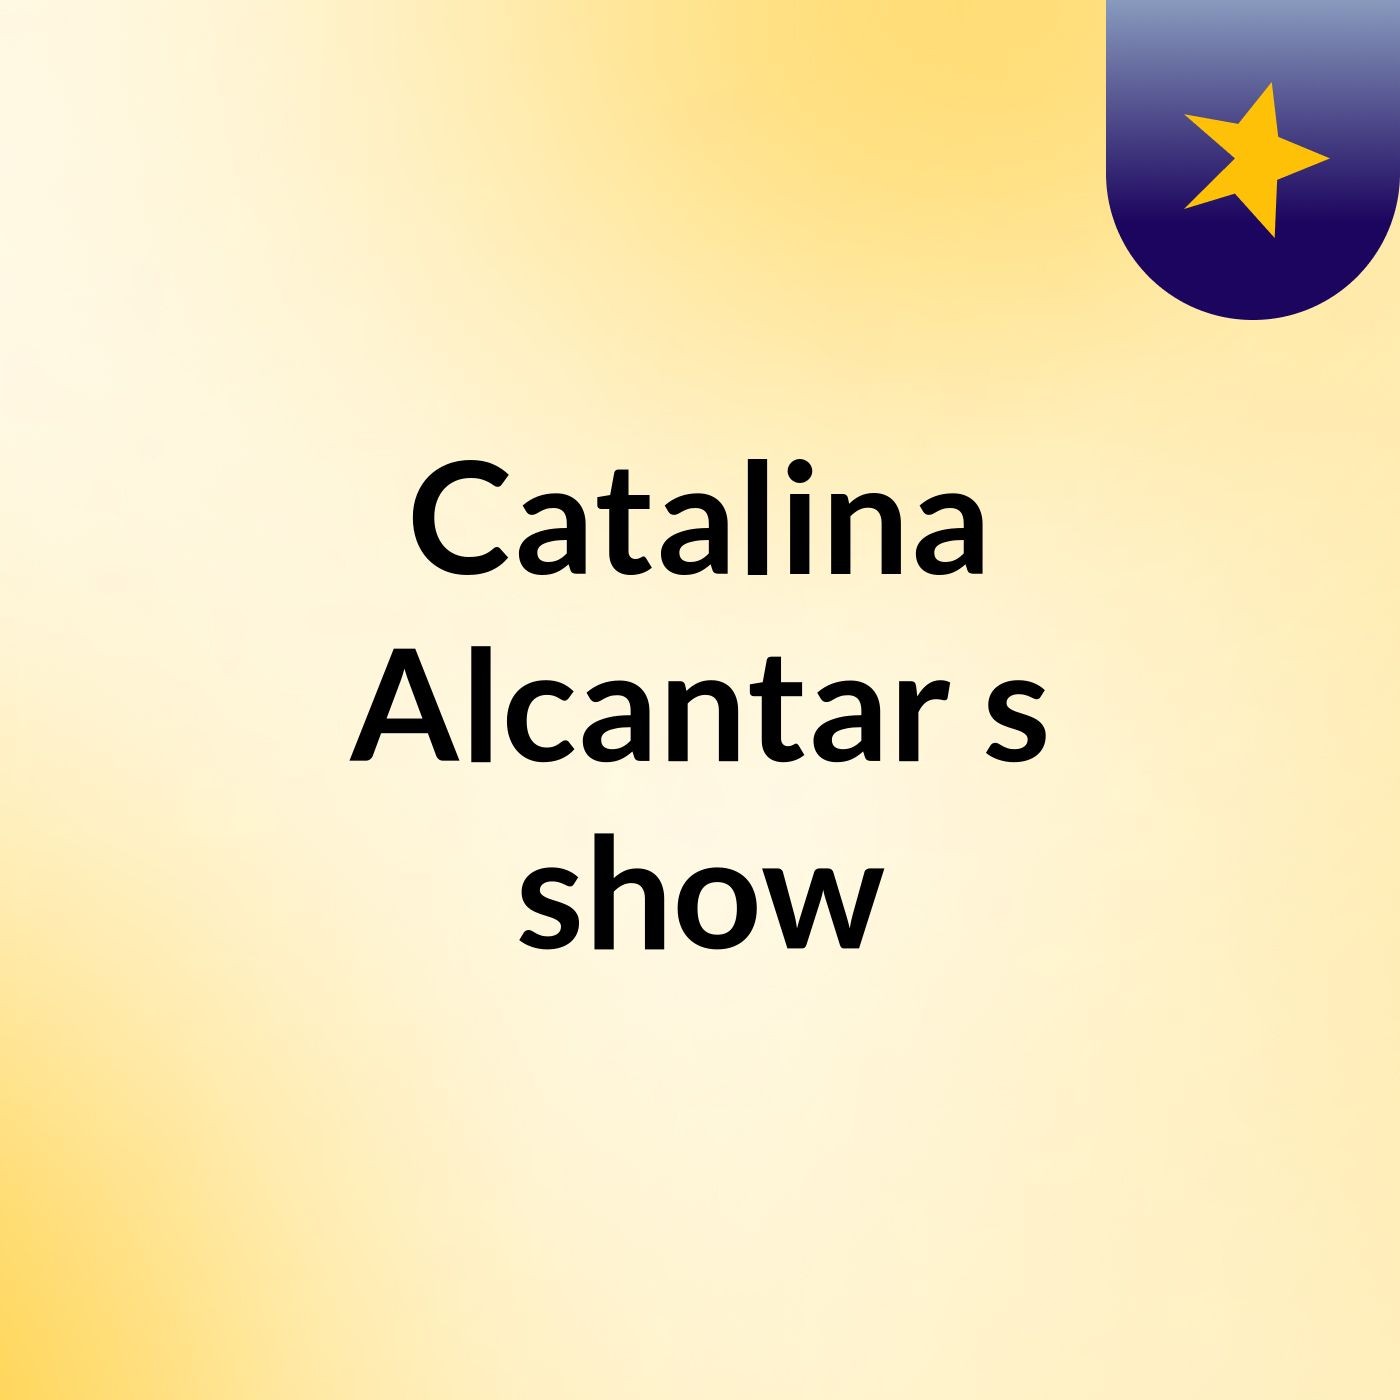 Catalina Alcantar's show